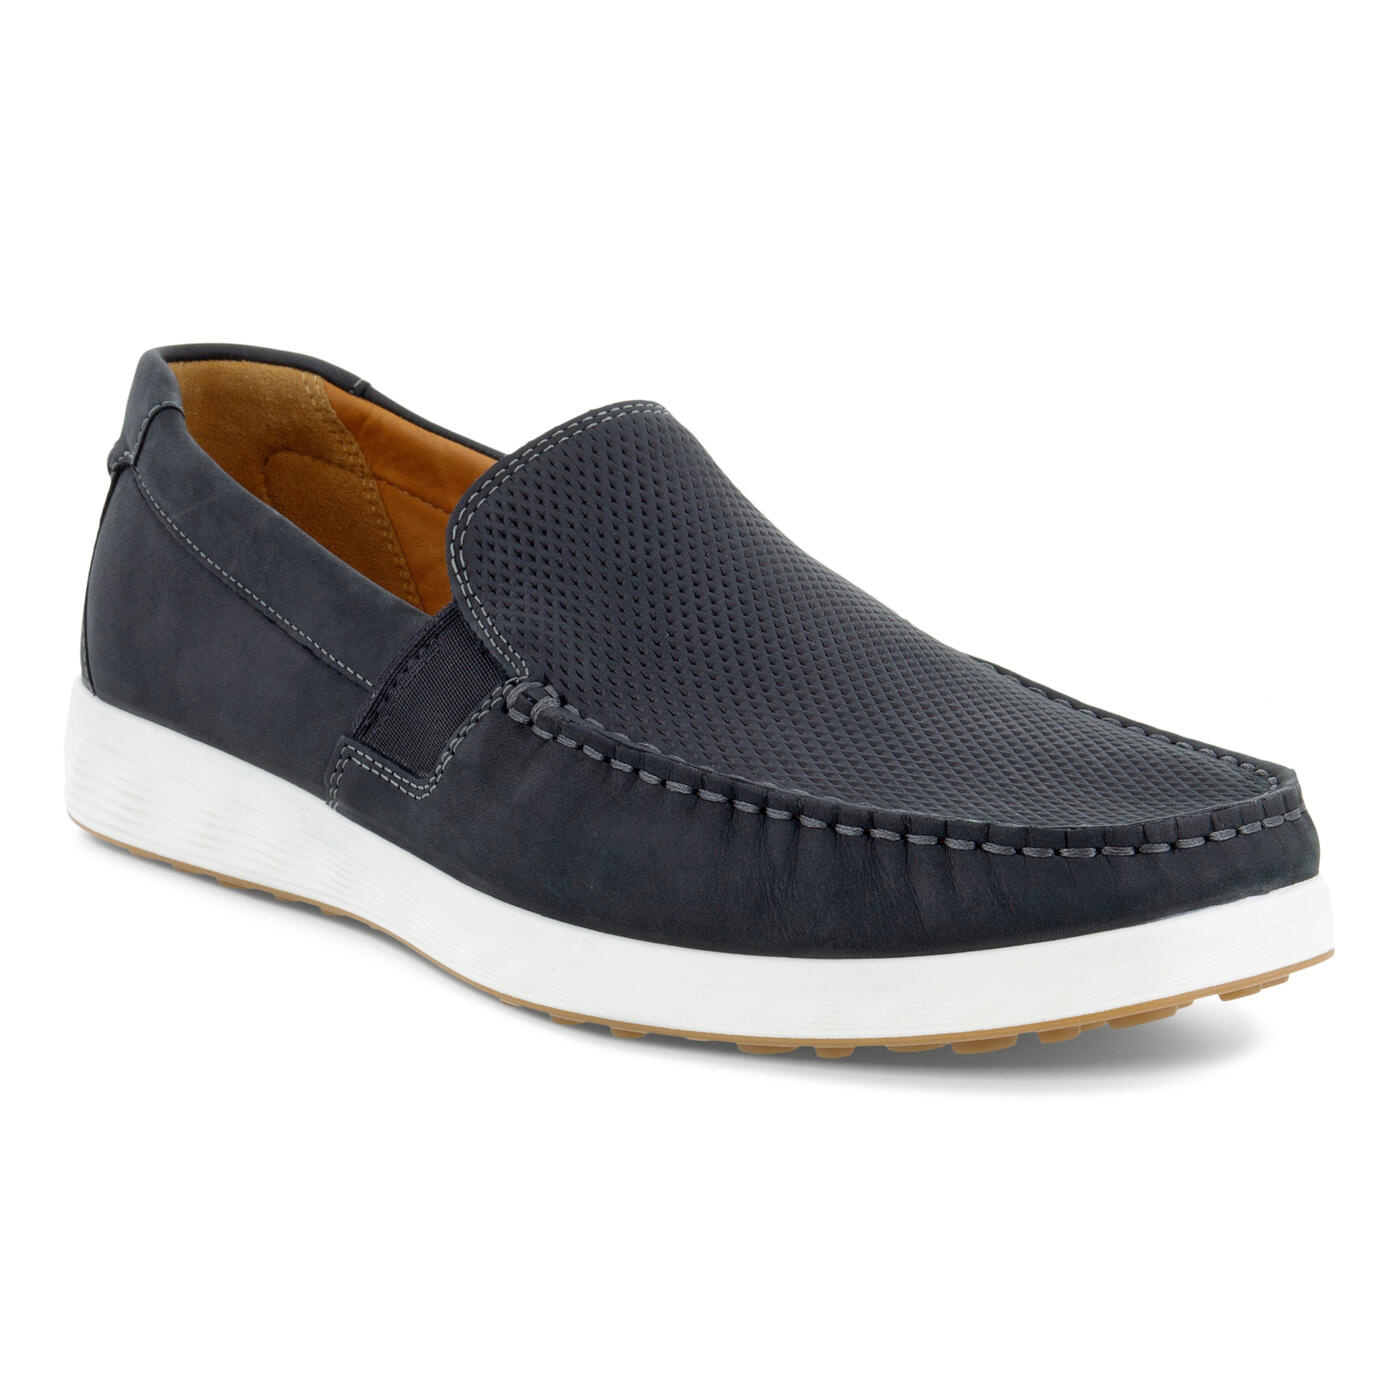 Ecco S Lite Moc Summer Men's Slip-On Shoes - Shippy Shoes